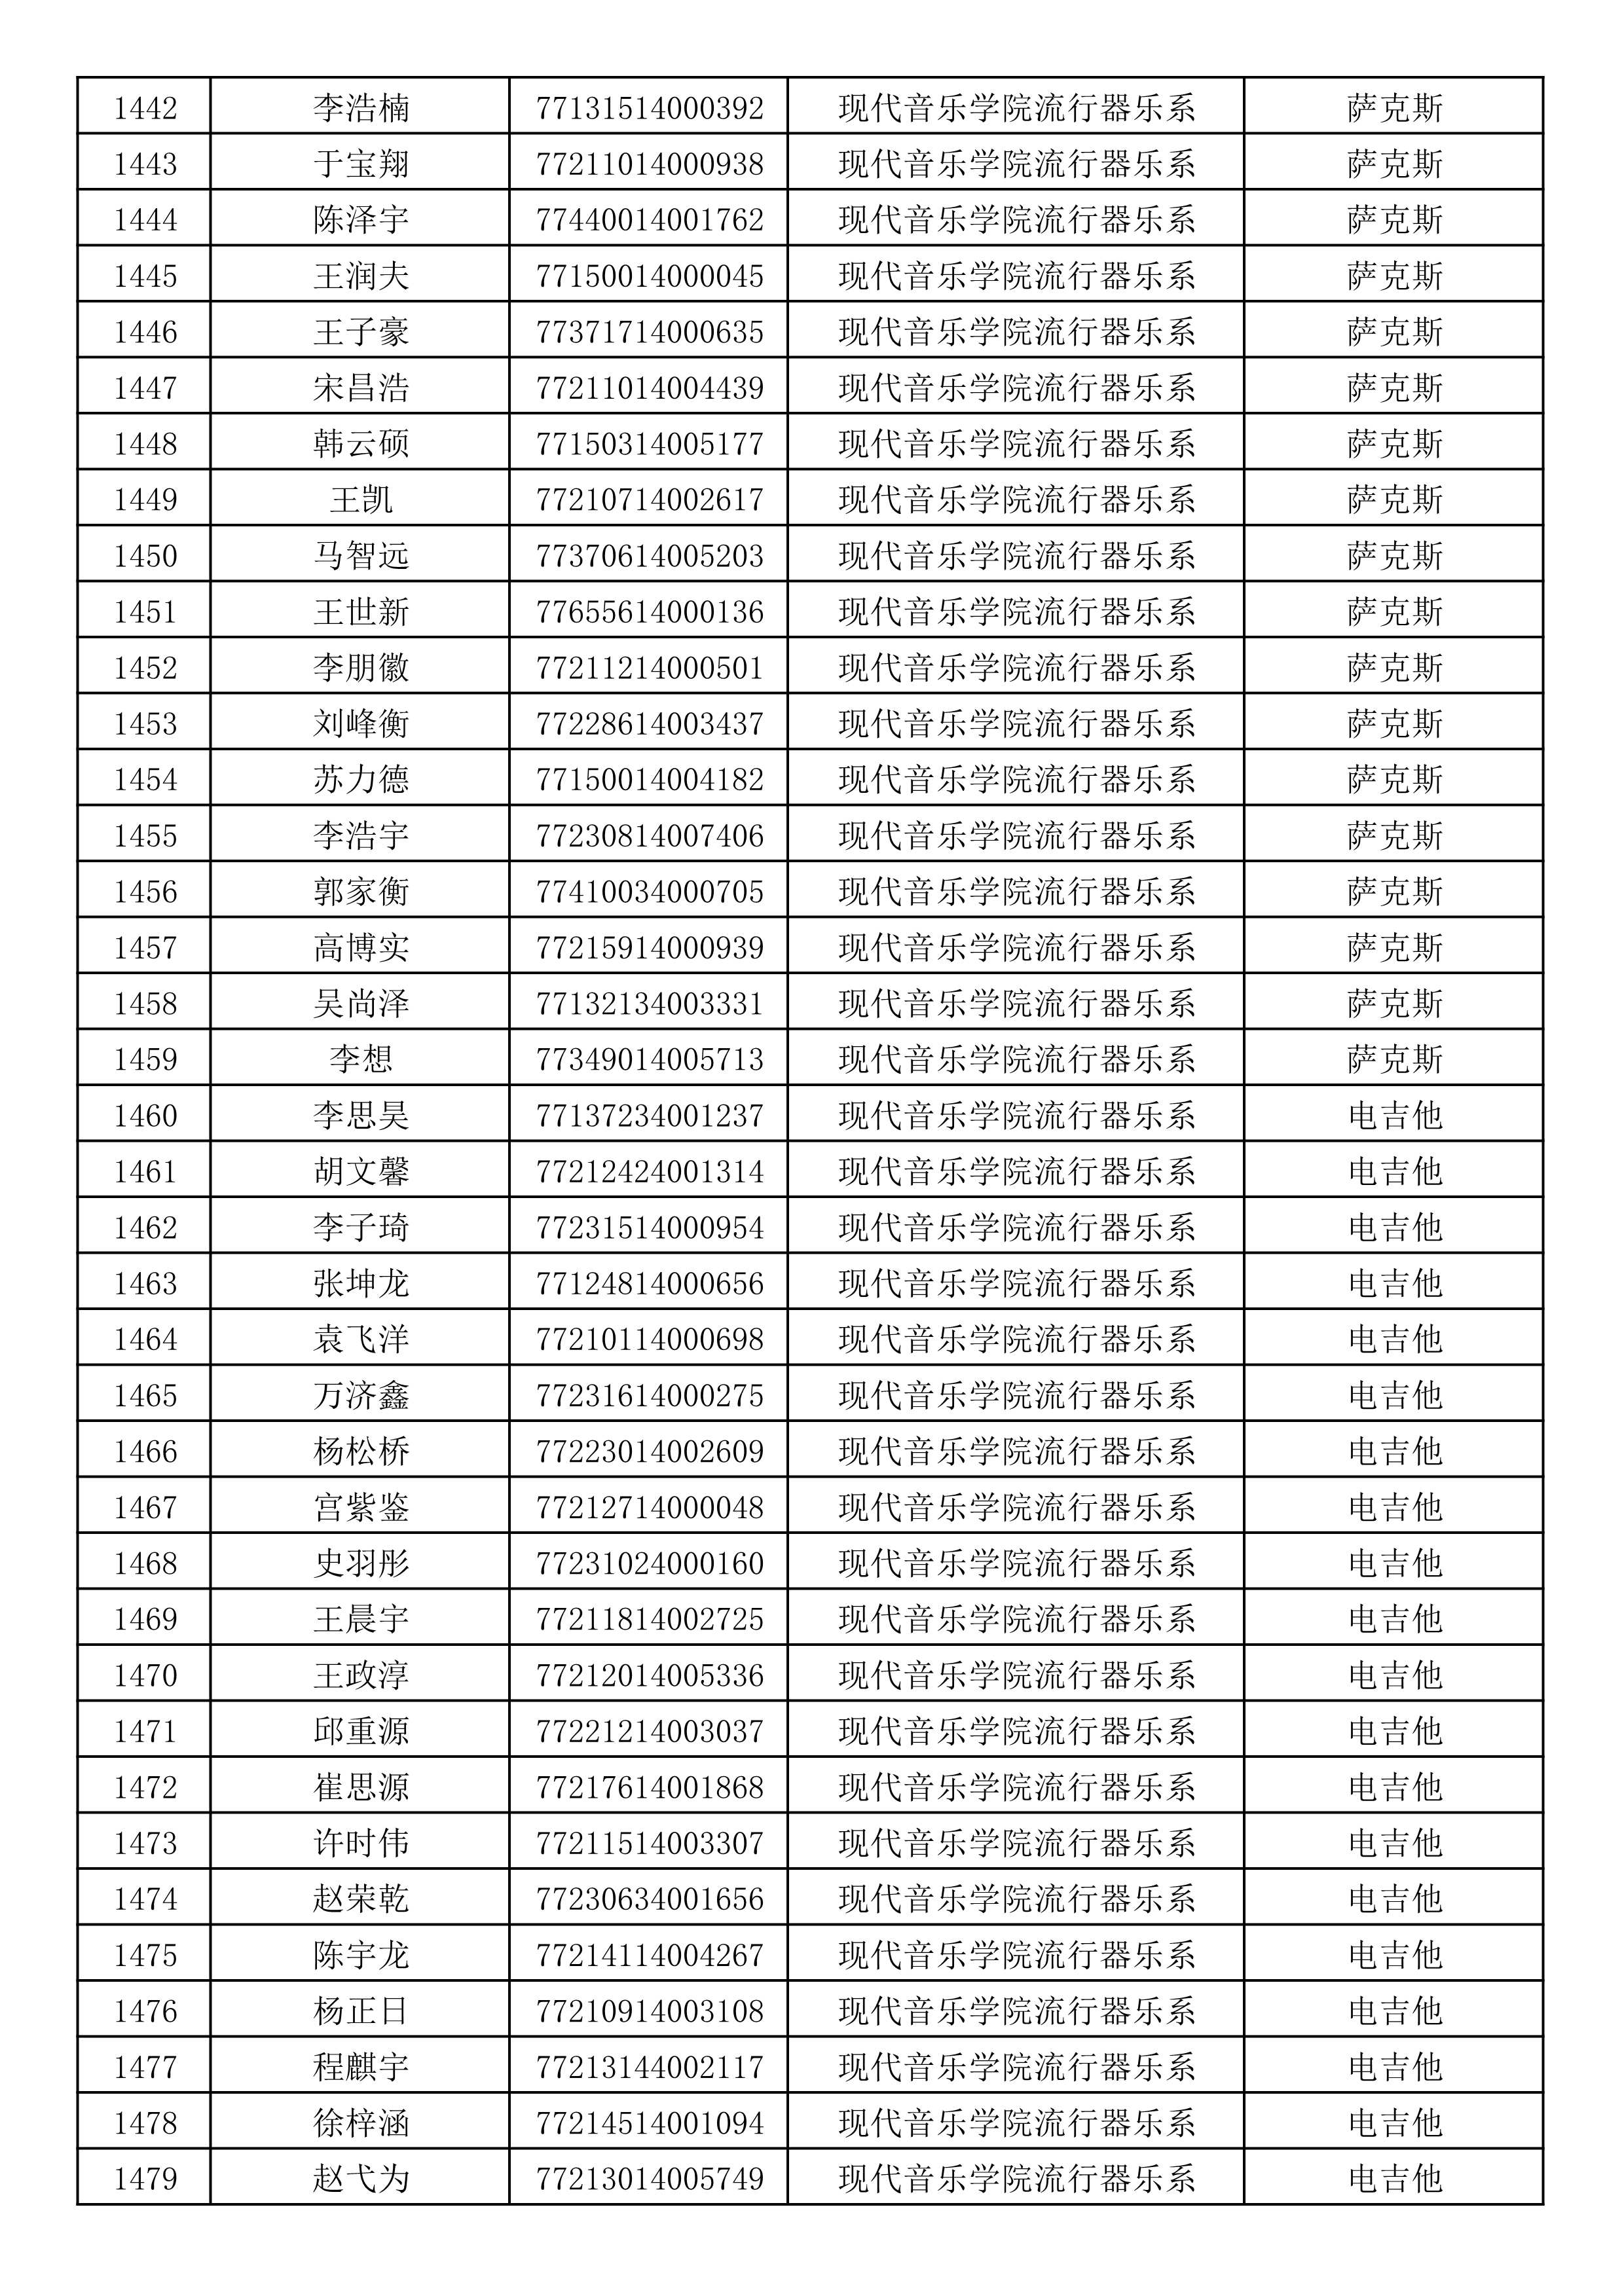 沈阳音乐学院2019年本科招生考试初试合格名单_39.jpg